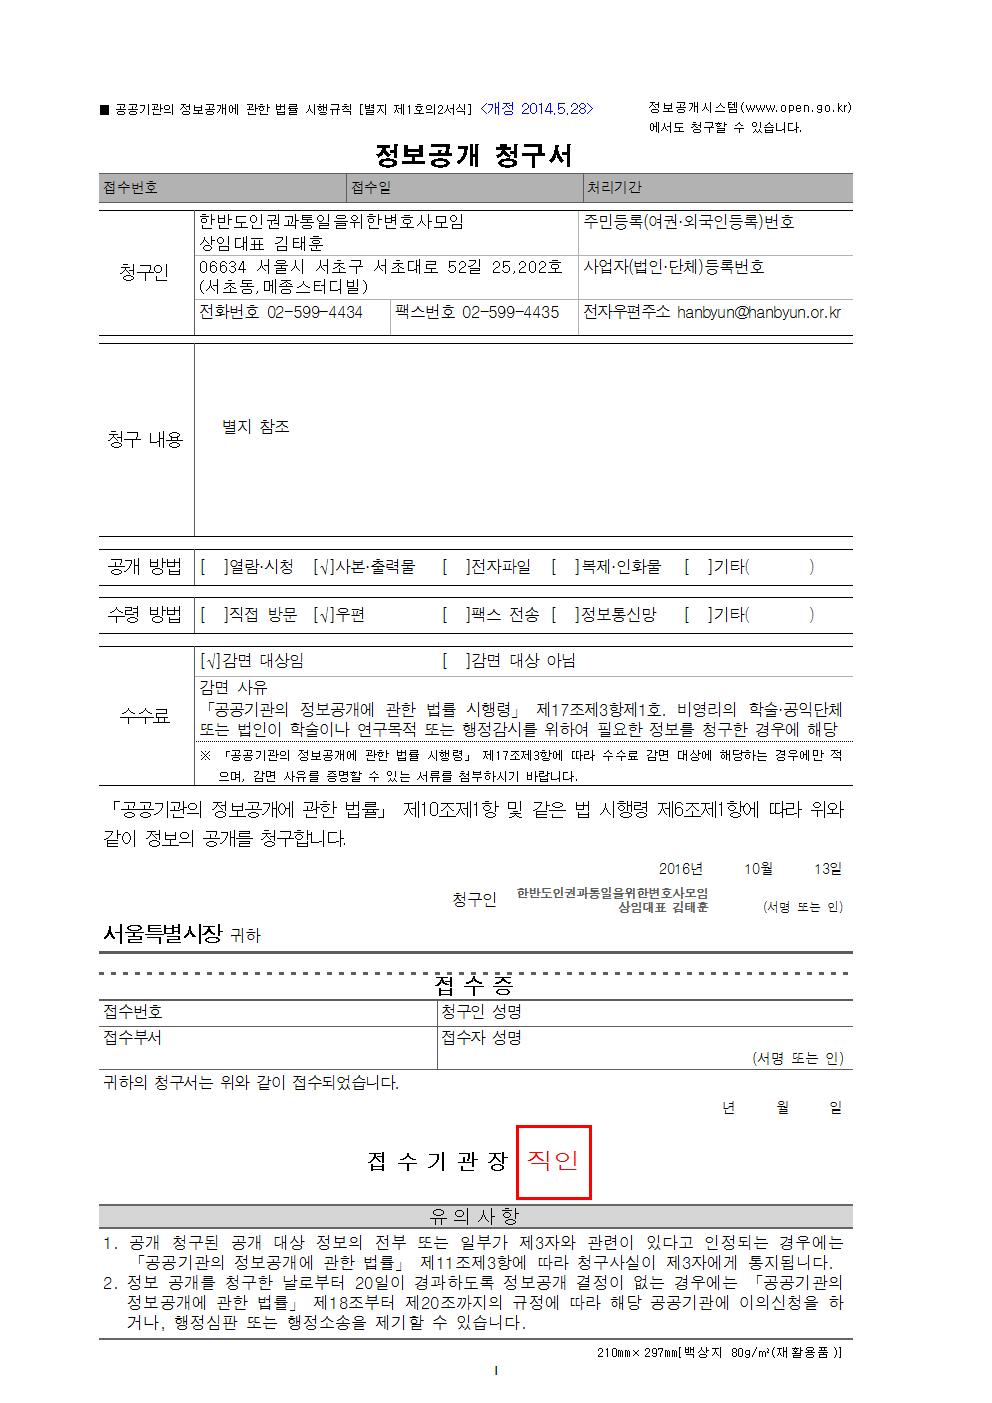 한반도 인권과 통일을 위한 변호사모임 서울시에 정보공개 청구서